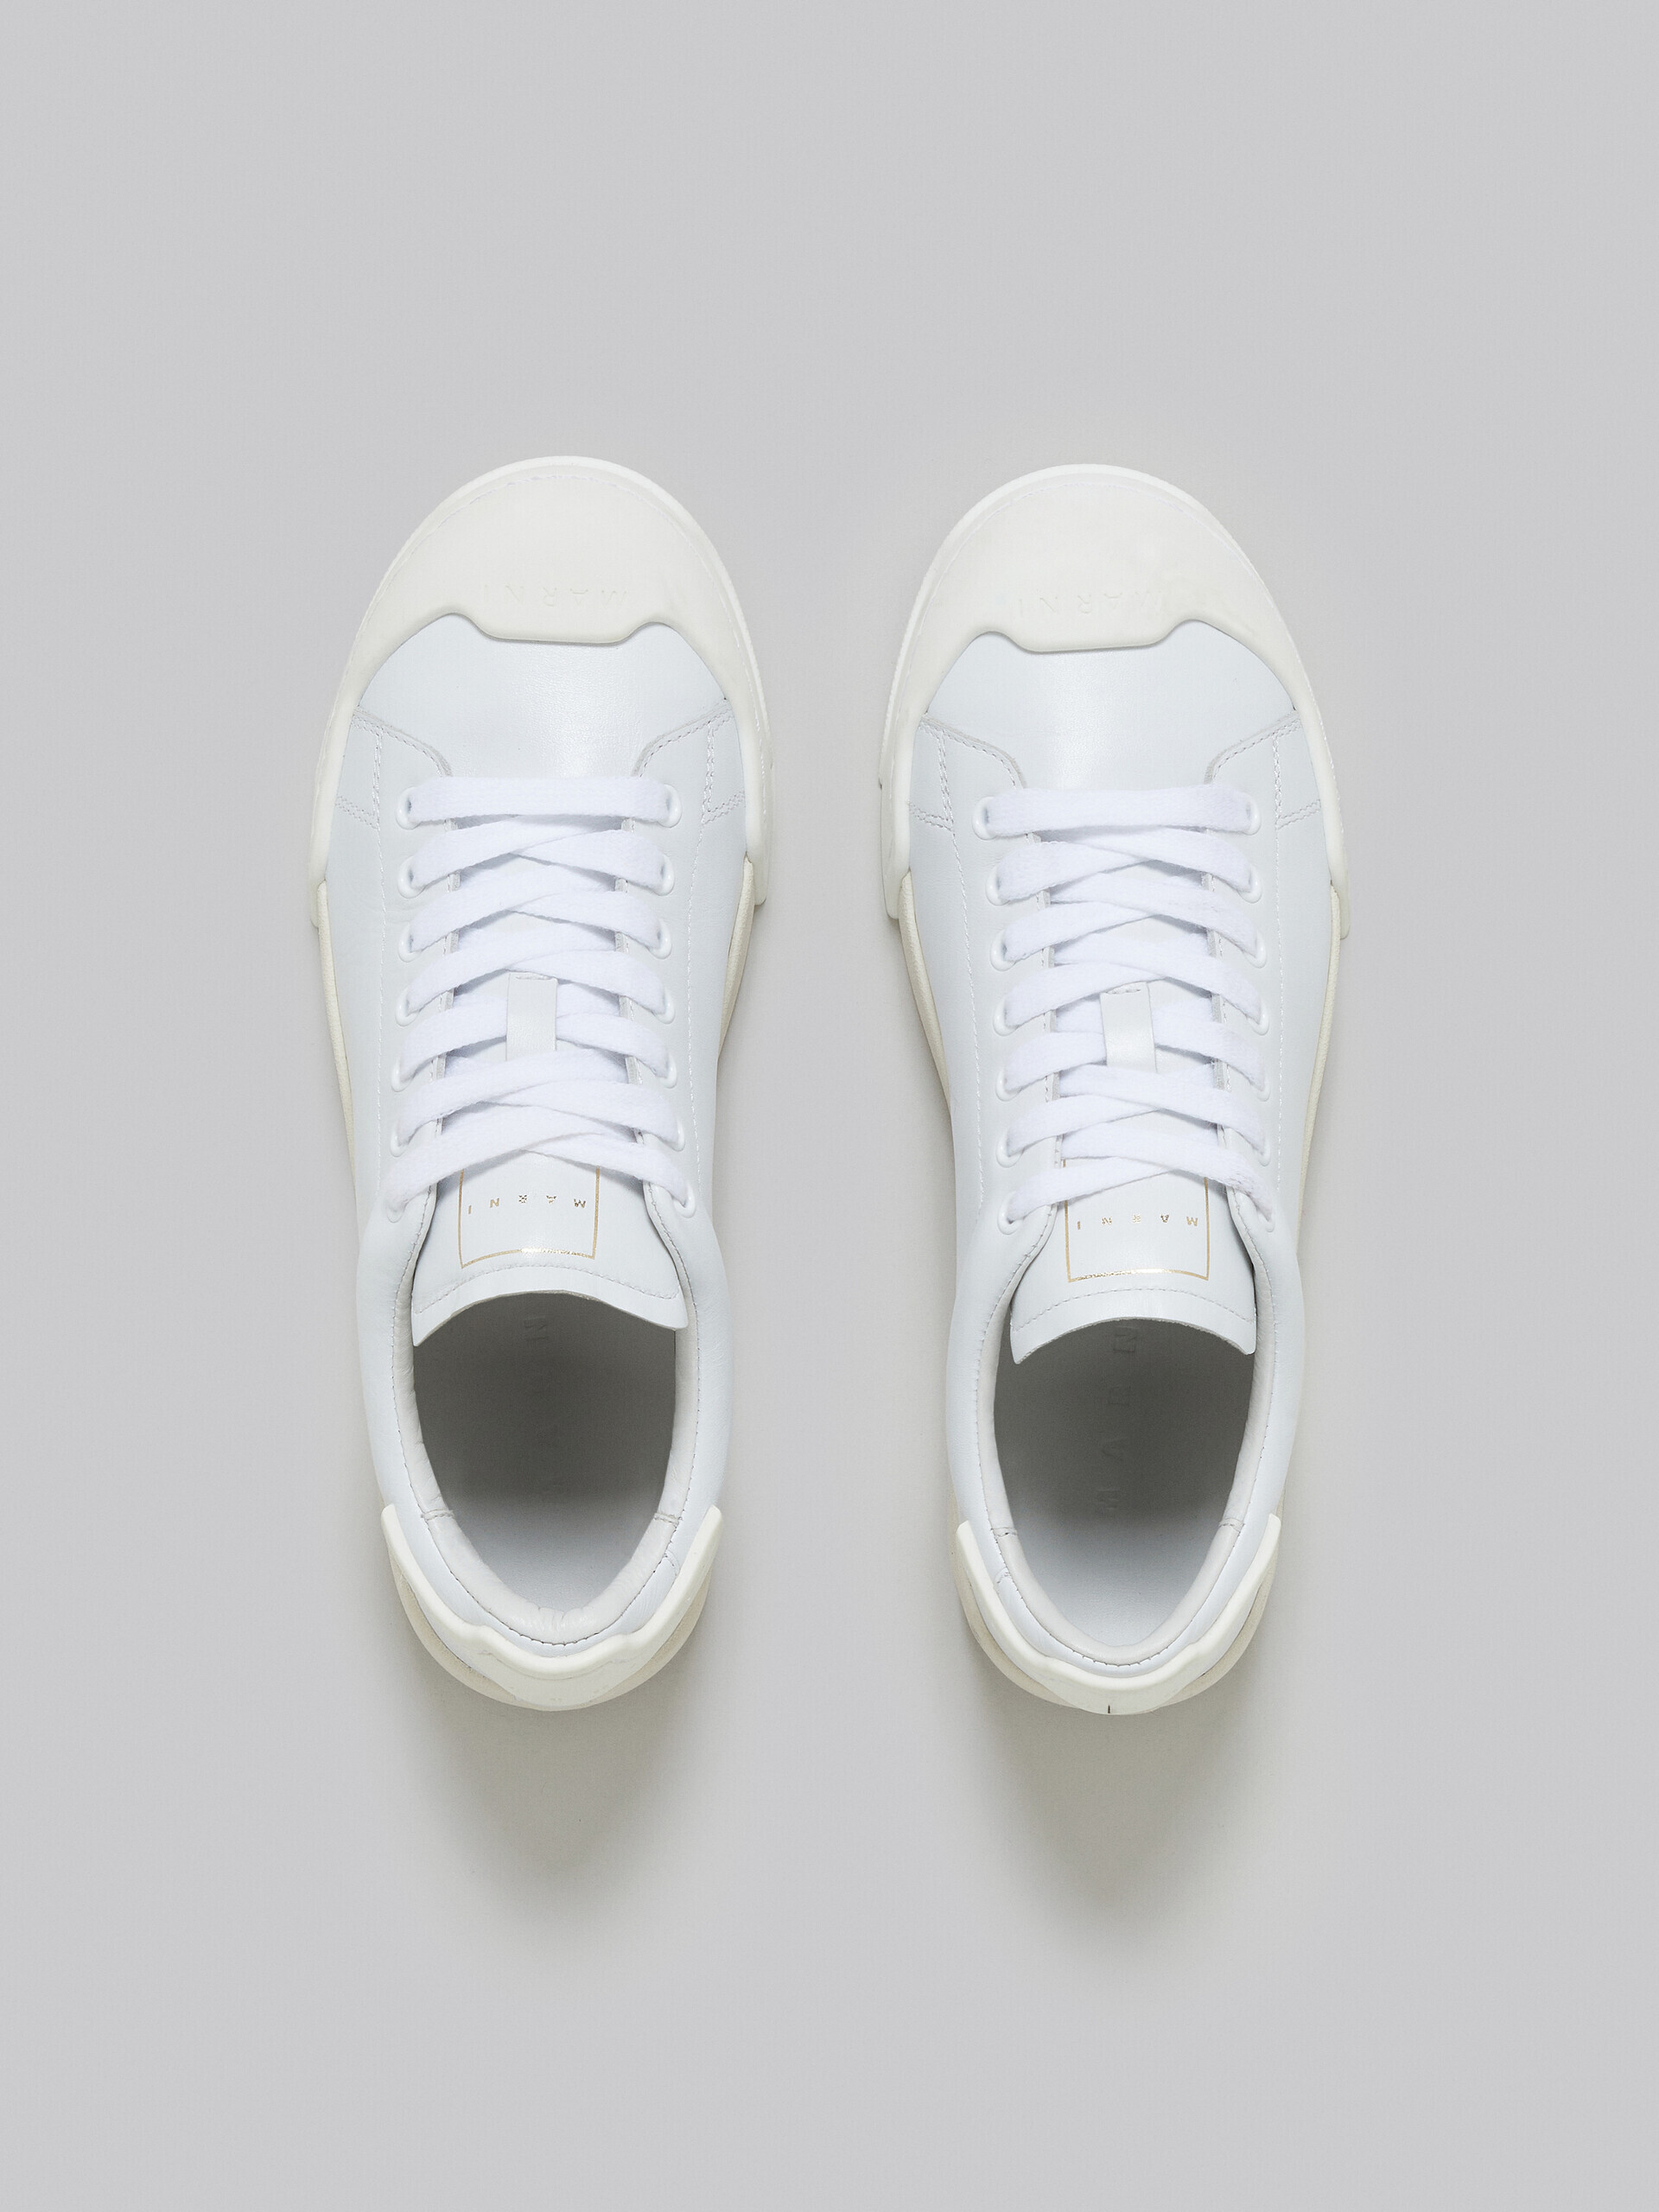 Sneakers Dada Bumper aus weißem Leder - Sneakers - Image 4